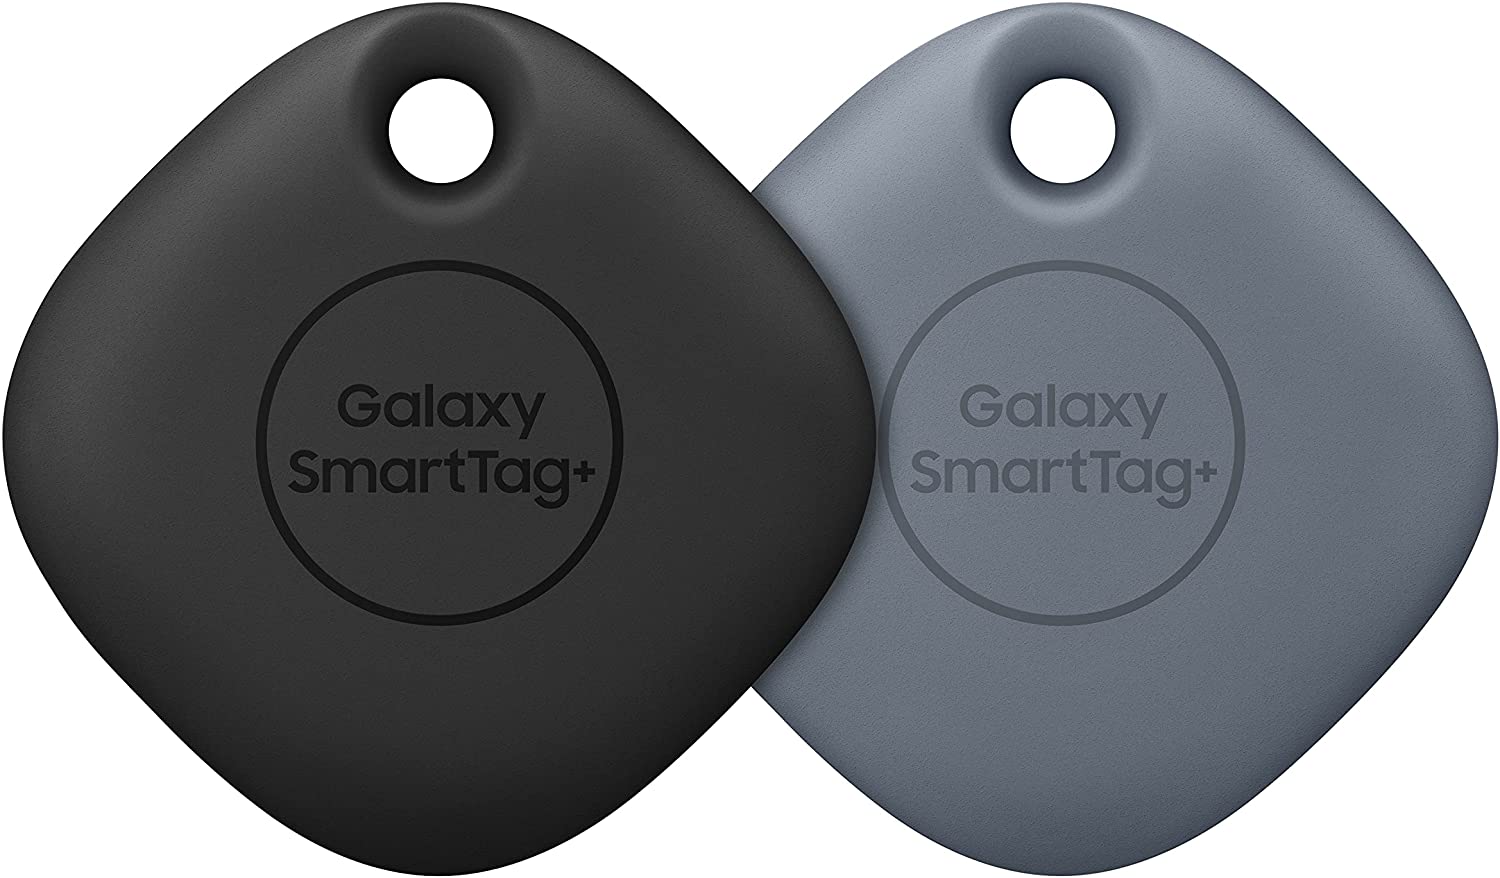 Samsung Galaxy SmartTag+ with Ultra-Wideband - Black & Denim1